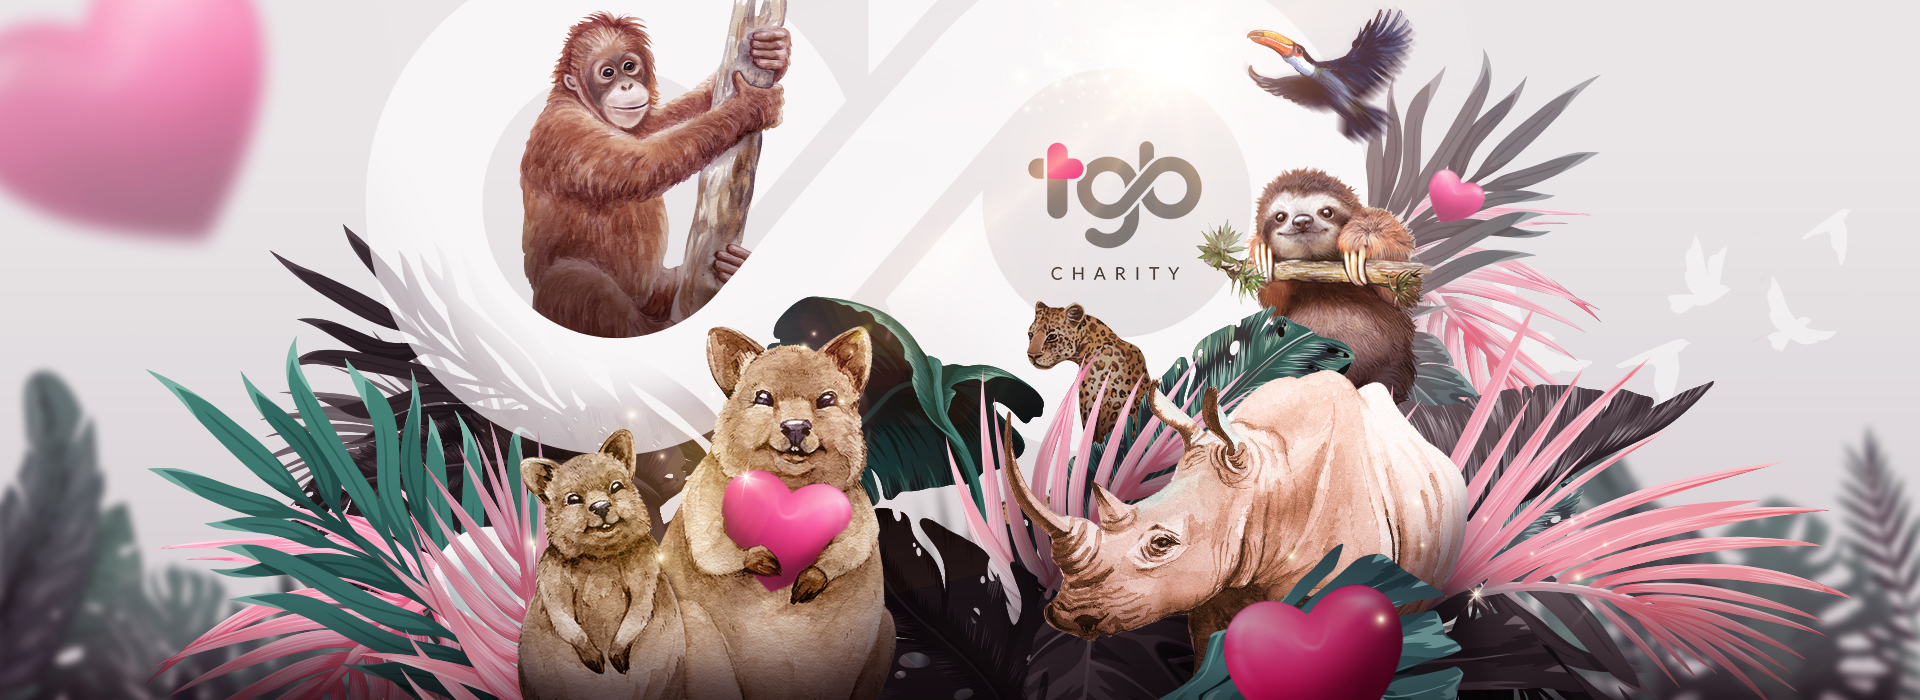 TGB Charity - 地球上所有生物皆息息相关_爱．无分种类